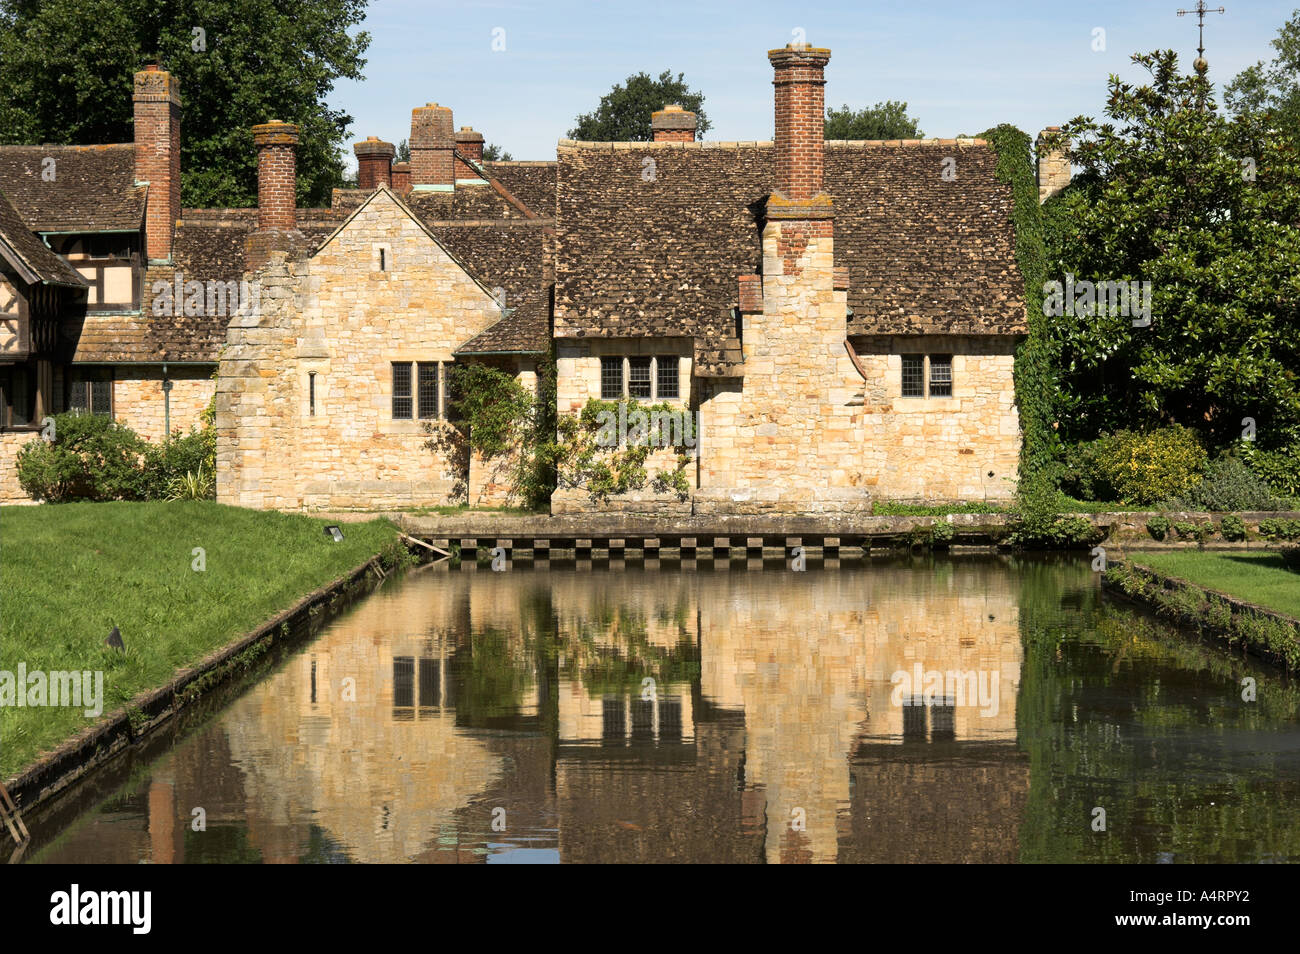 Image de Tudor cottage, reflétée dans les douves. Situé dans le magnifique parc du château de Hever. Hever, Kent UK Banque D'Images